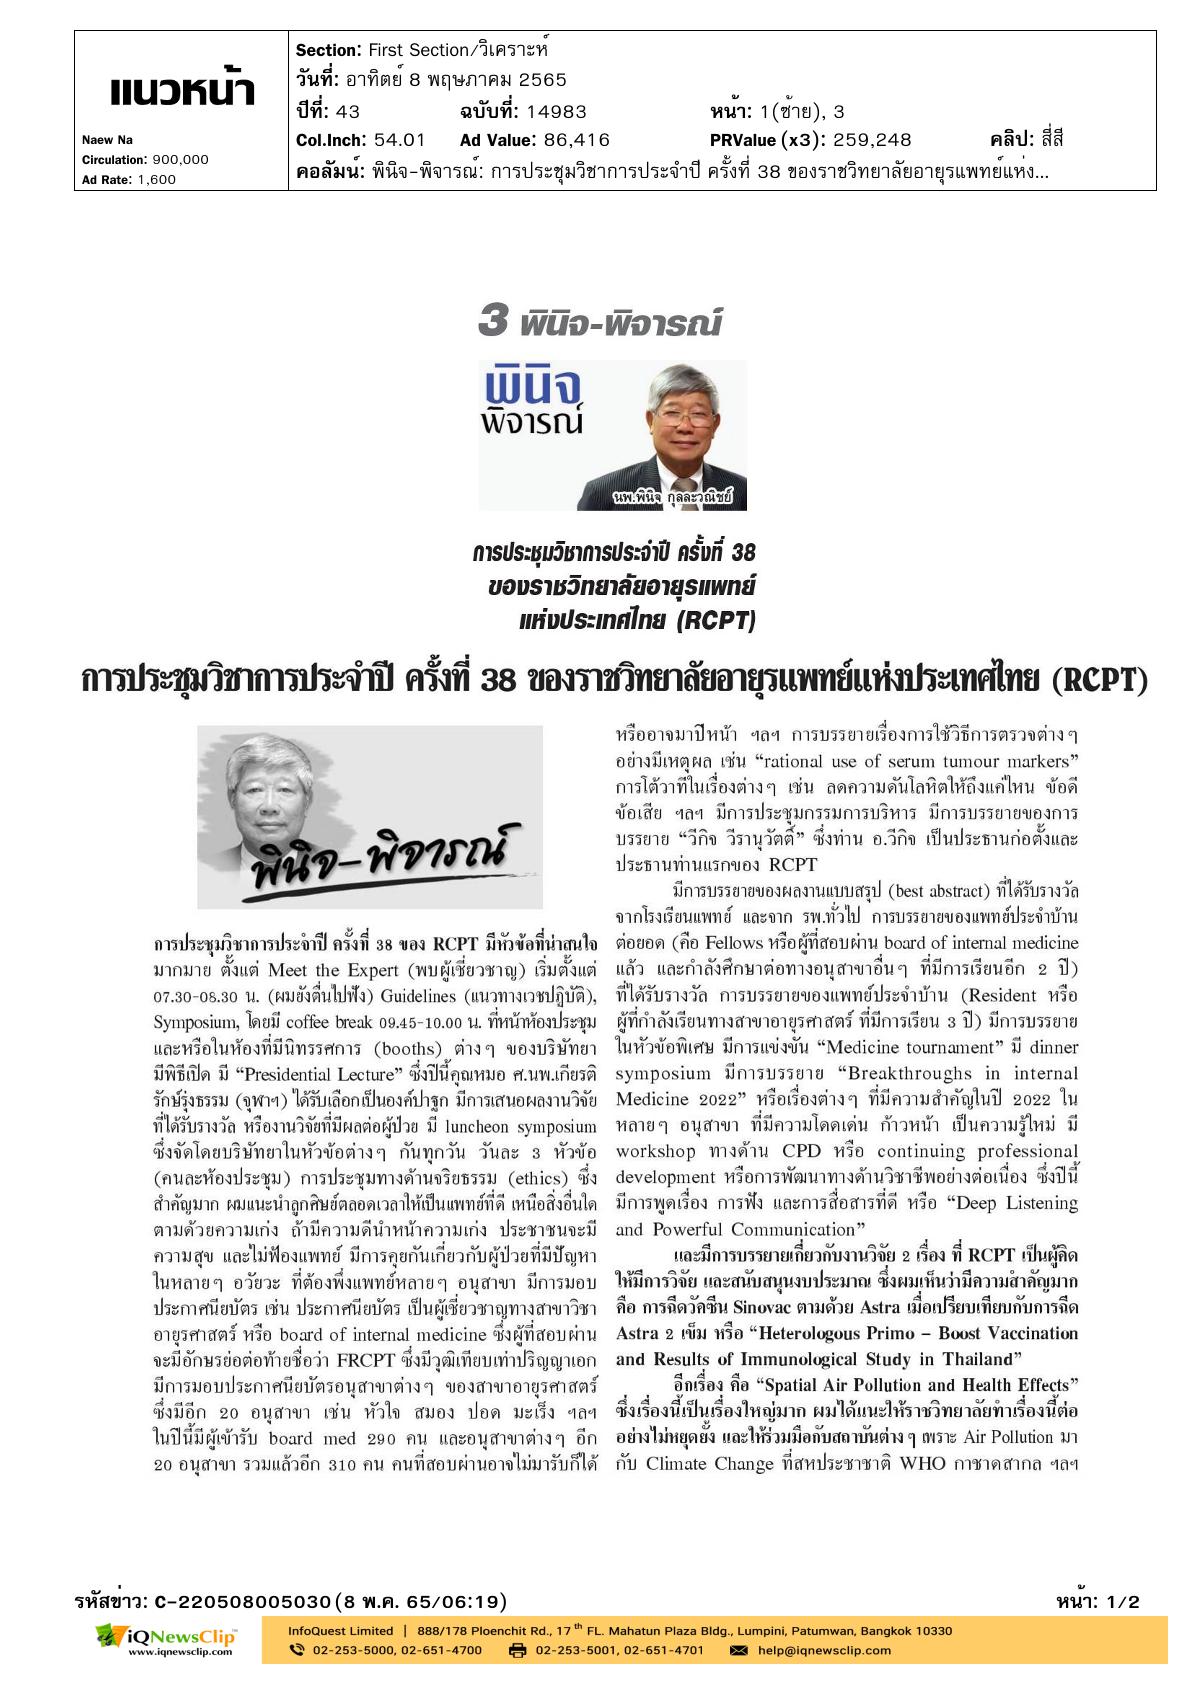 บทความเรื่อง “การประชุมวิชาการประจำปี ครั้งที่ 38 ของราชวิทยาลัยอายุรแพทย์แห่งประเทสไทย (RCPT)”